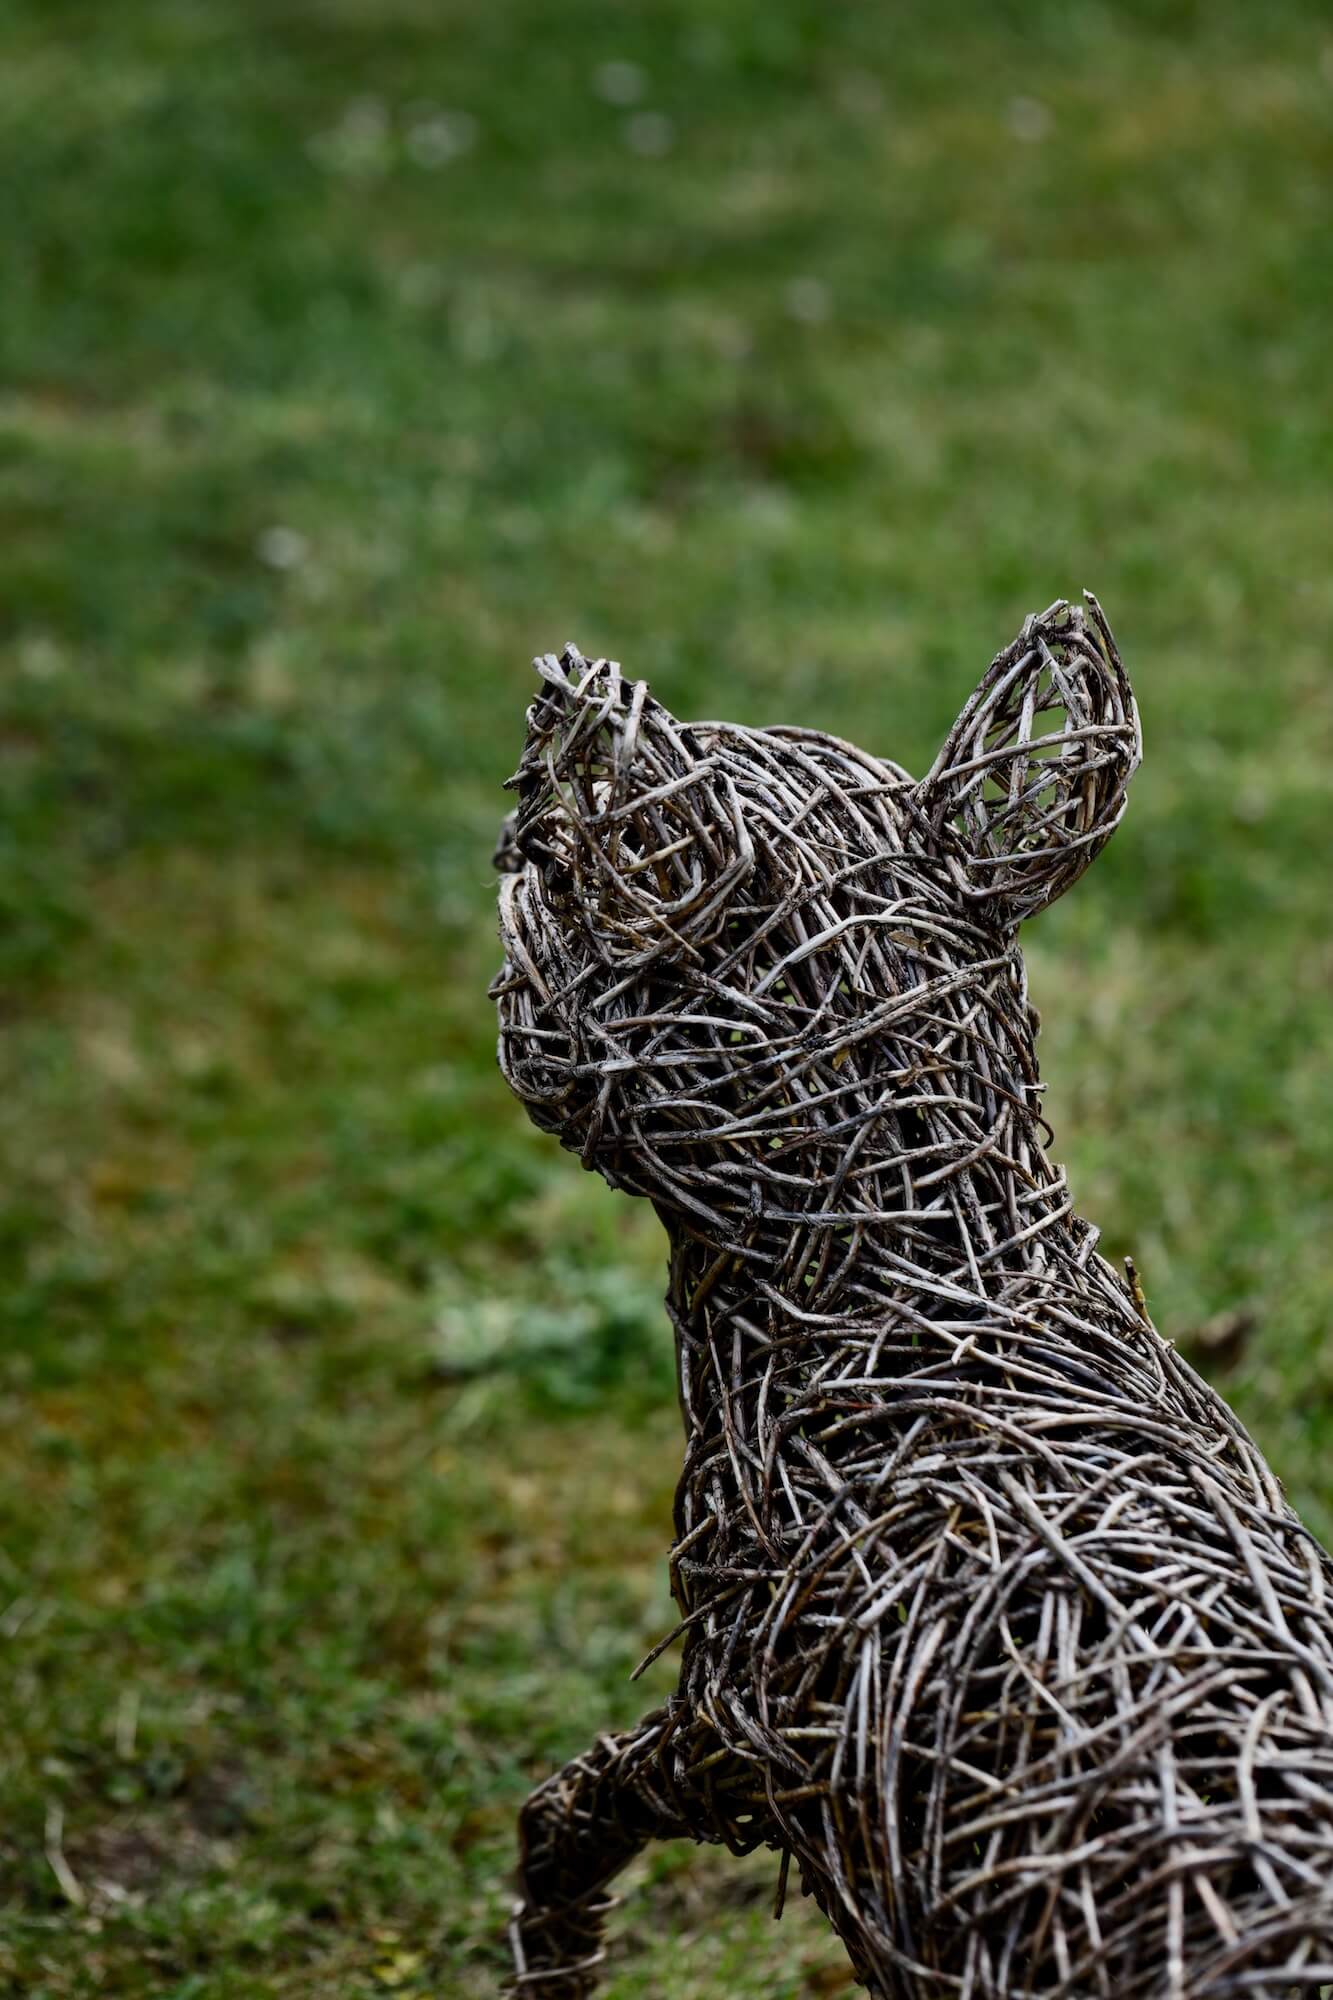 willow fox sculpture in a garden